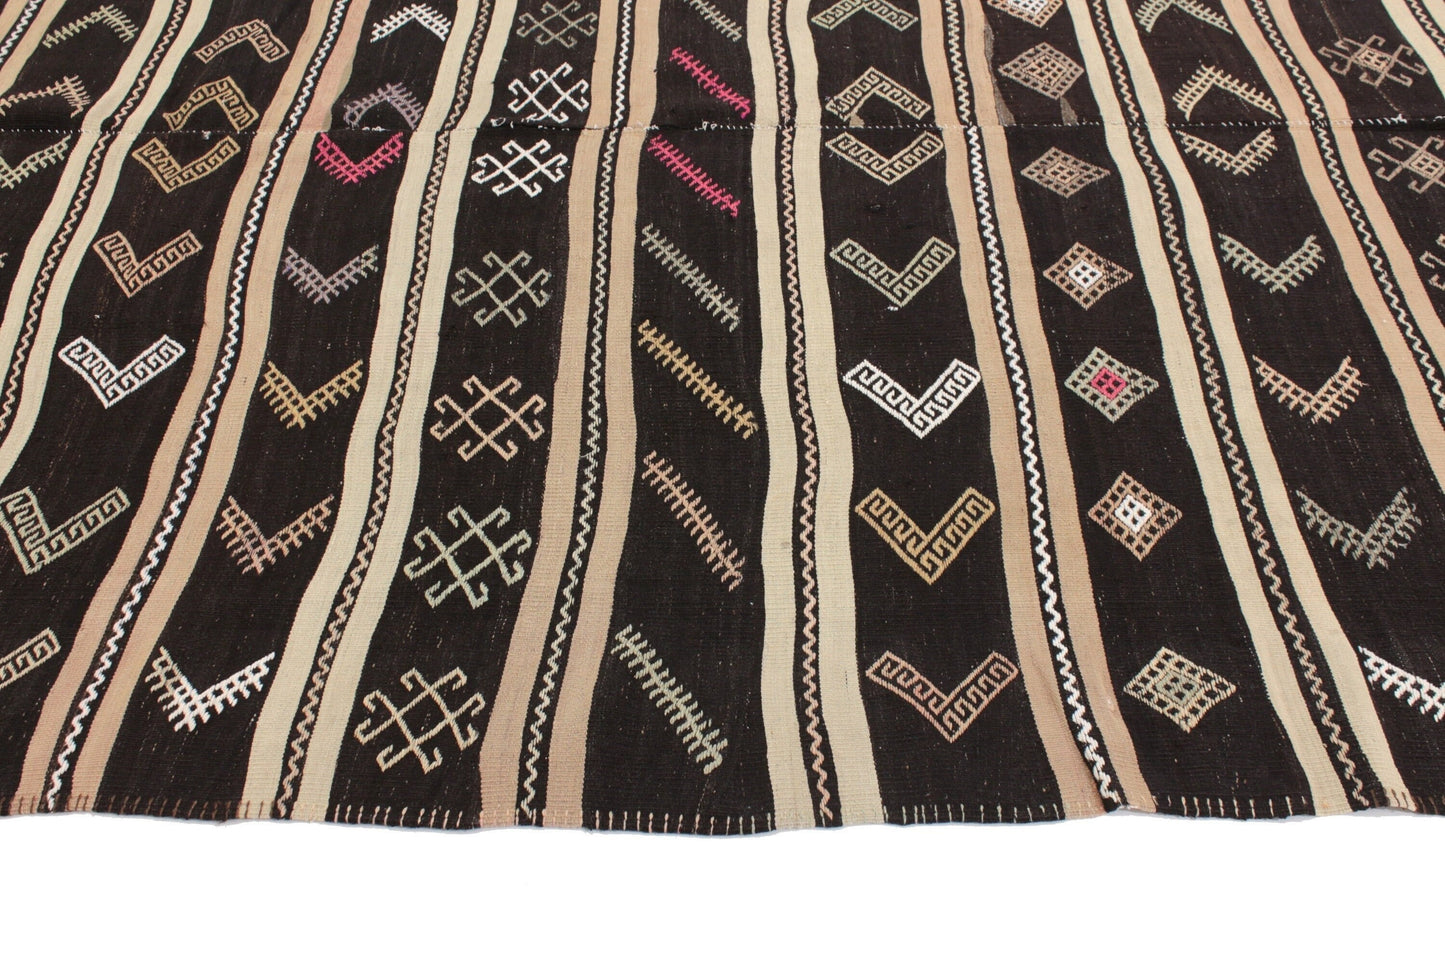 Turkish Kilim Rug, Rug Kilim, Handmade Flat Weave Kilim Rug, Vintage Striped Kilim Rug, Bedroom Rug, Area Floor Kilim Rug, Wool Rug, 5993